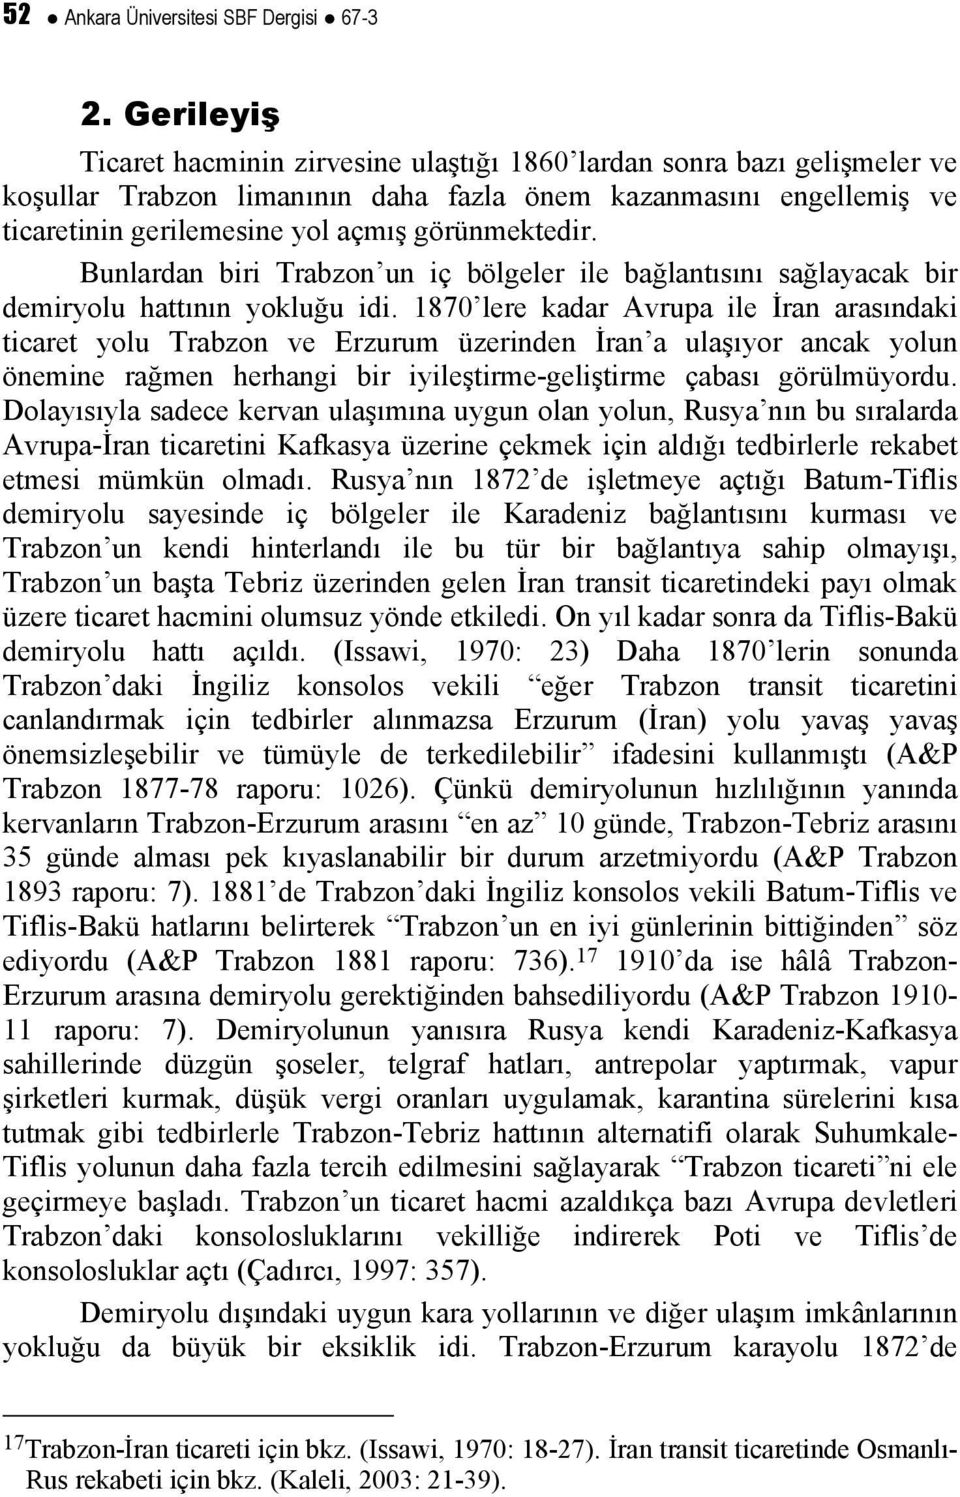 görünmektedir. Bunlardan biri Trabzon un iç bölgeler ile bağlantısını sağlayacak bir demiryolu hattının yokluğu idi.